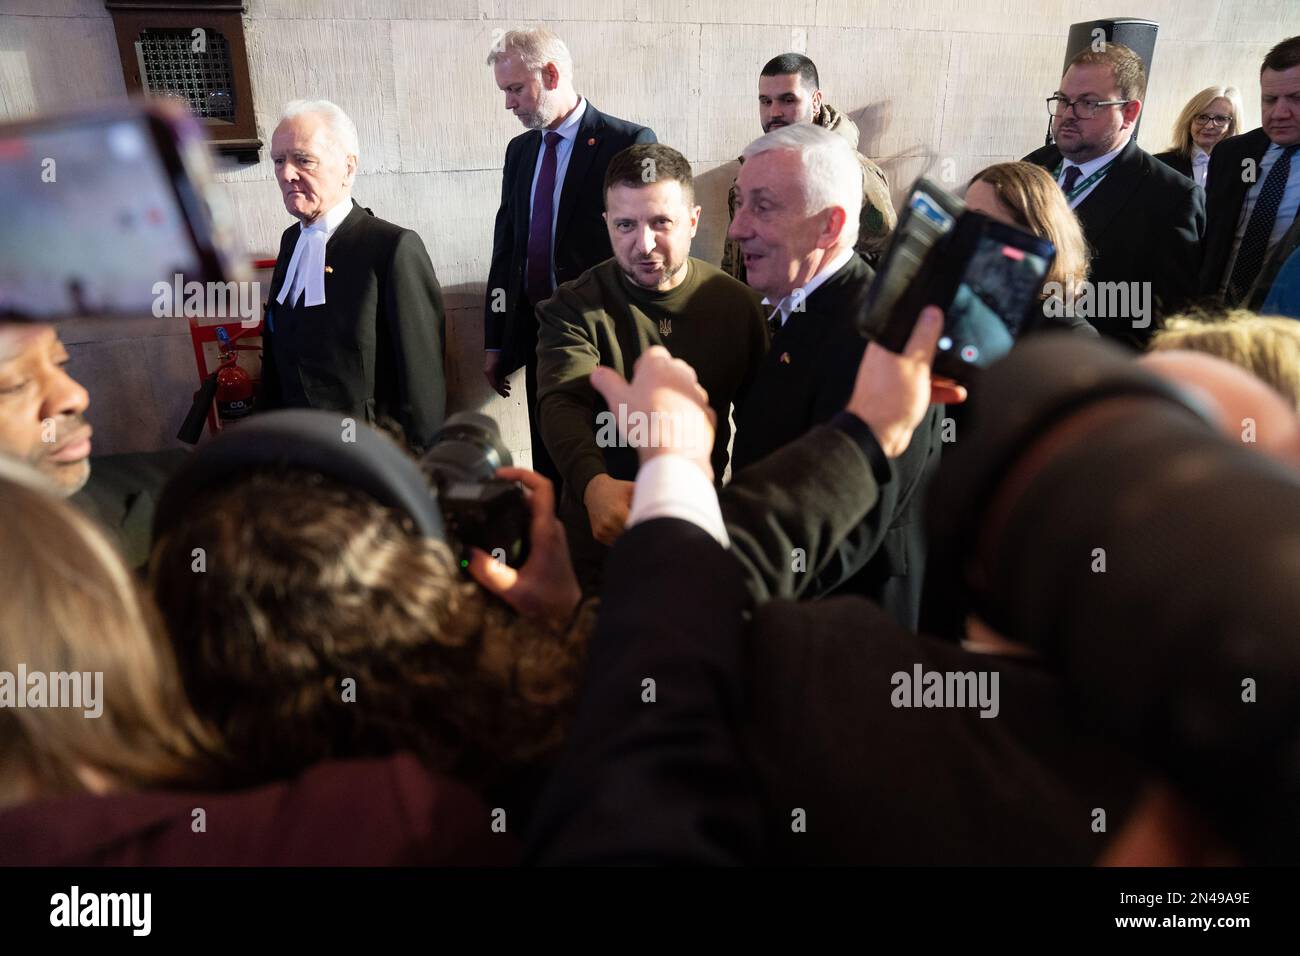 Der ukrainische Präsident Wolodymyr Zelensky schüttelt den Abgeordneten die Hand, während er mit dem Sprecher des Unterhauses Sir Lindsay Hoyle und dem Sprecher des Oberhauses Lord McFall durch den Palast von Westminster in London geht. Bilddatum: Mittwoch, 8. Februar 2023. Stockfoto